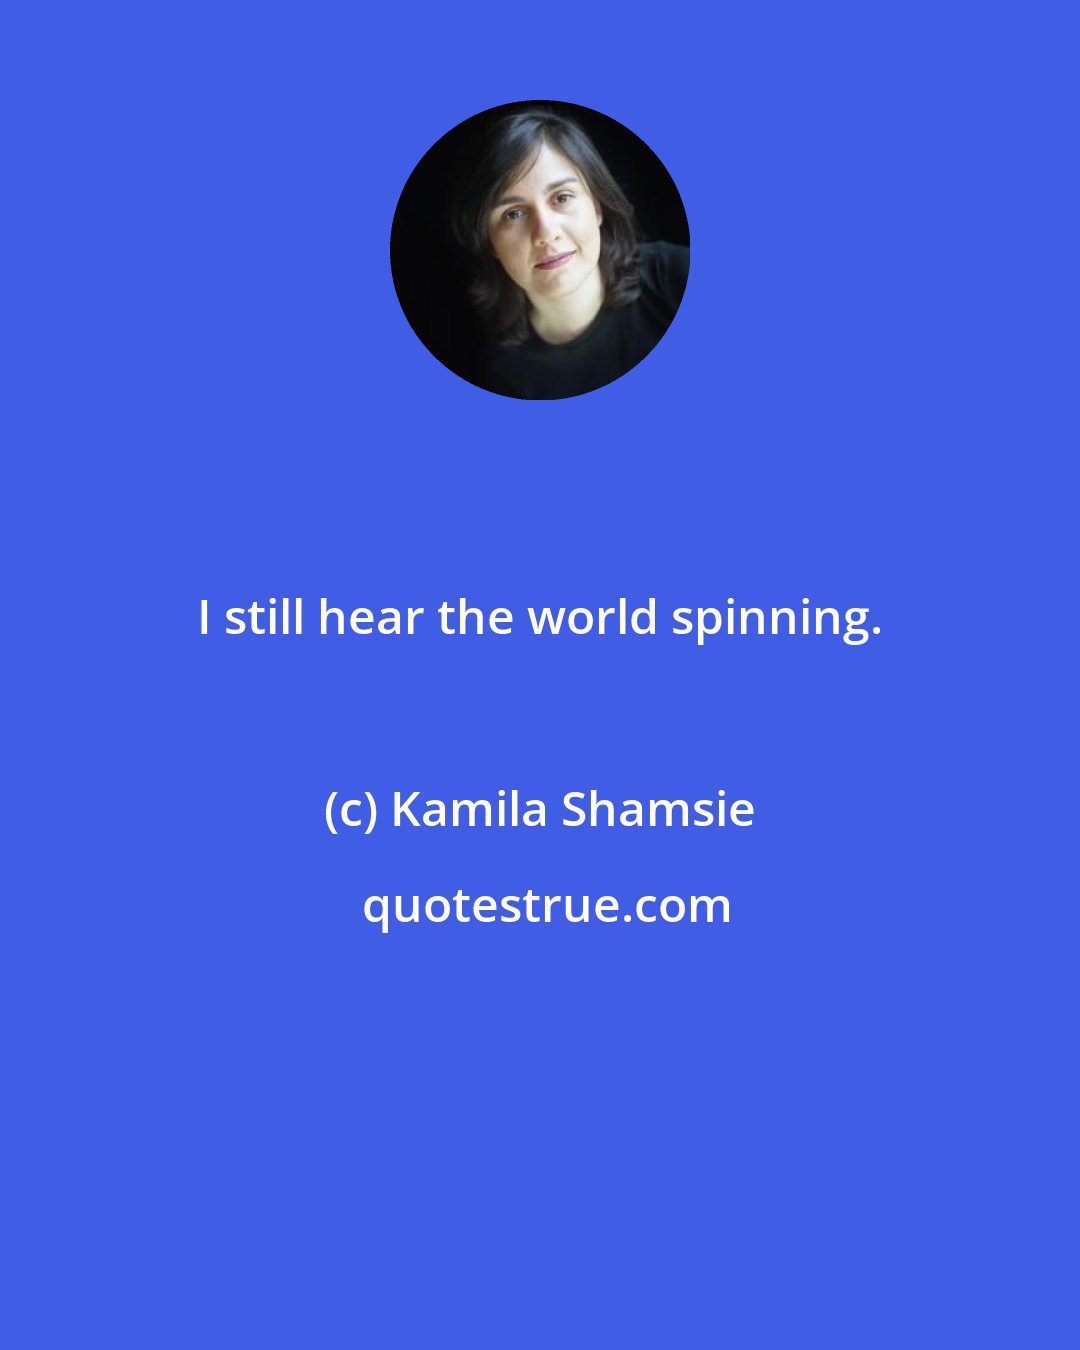 Kamila Shamsie: I still hear the world spinning.